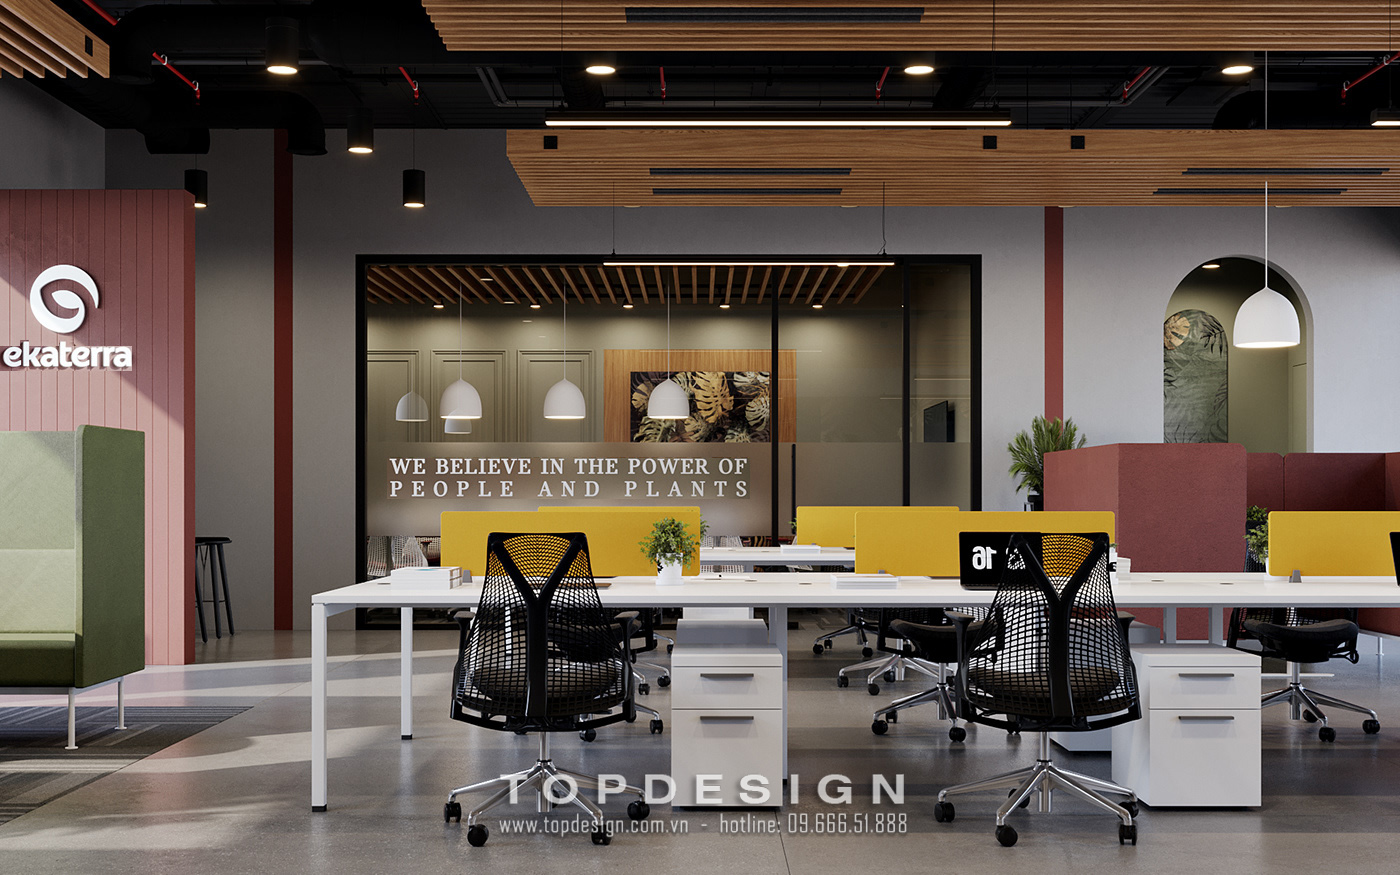 8.Tham khảo thiết kế nội thất văn phòng công ty EKATERRA tự nhiên, riêng tư_TOPDESIGN